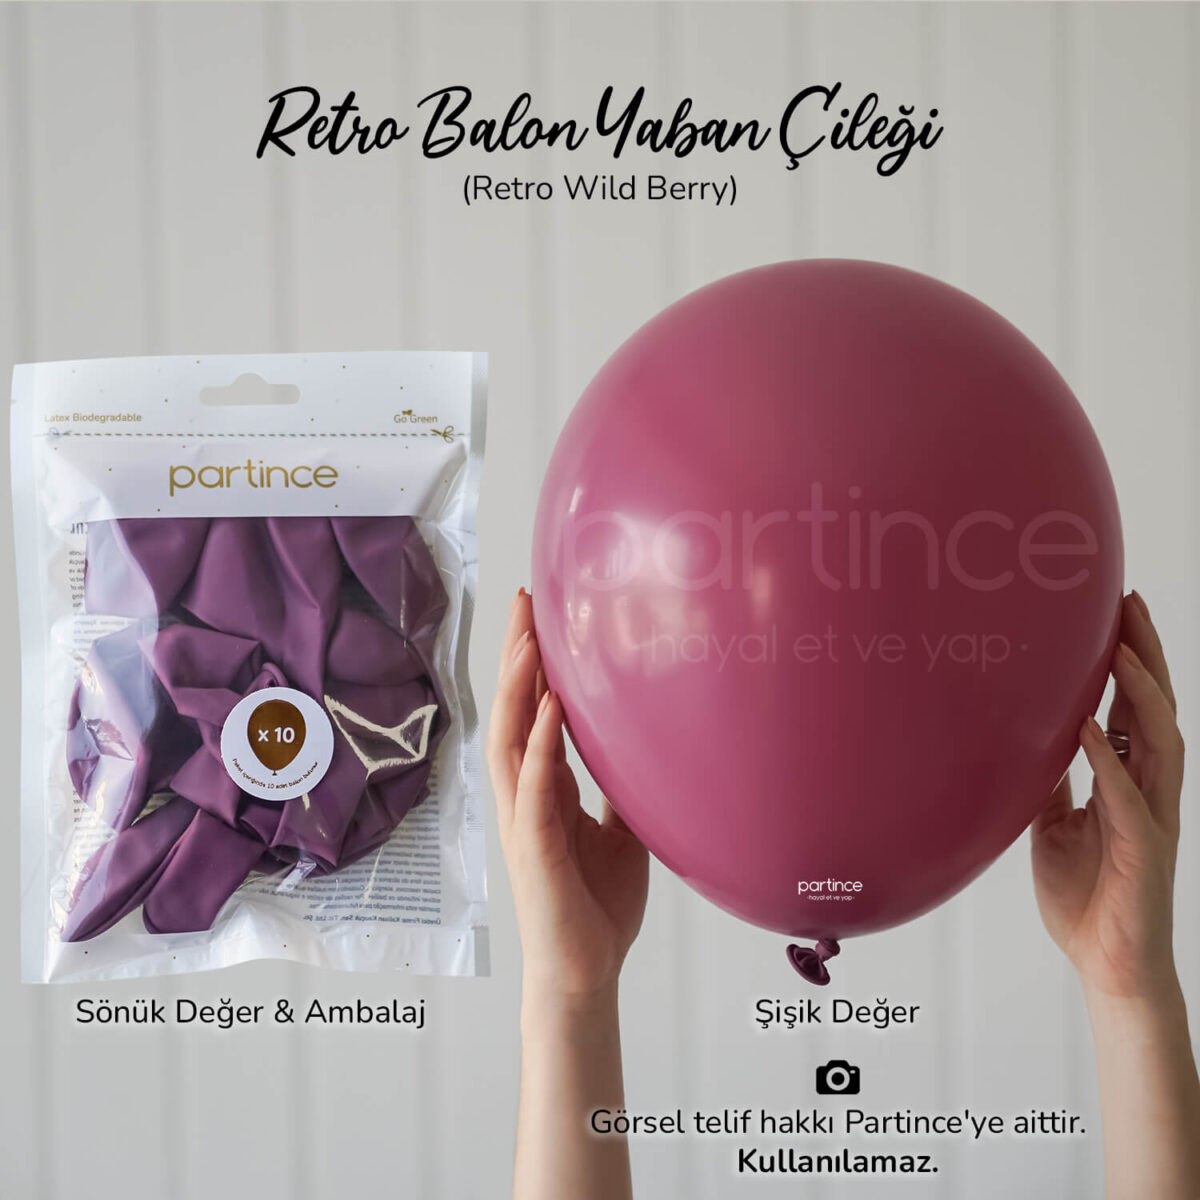 Retro balon wild berry (yaban çileği)